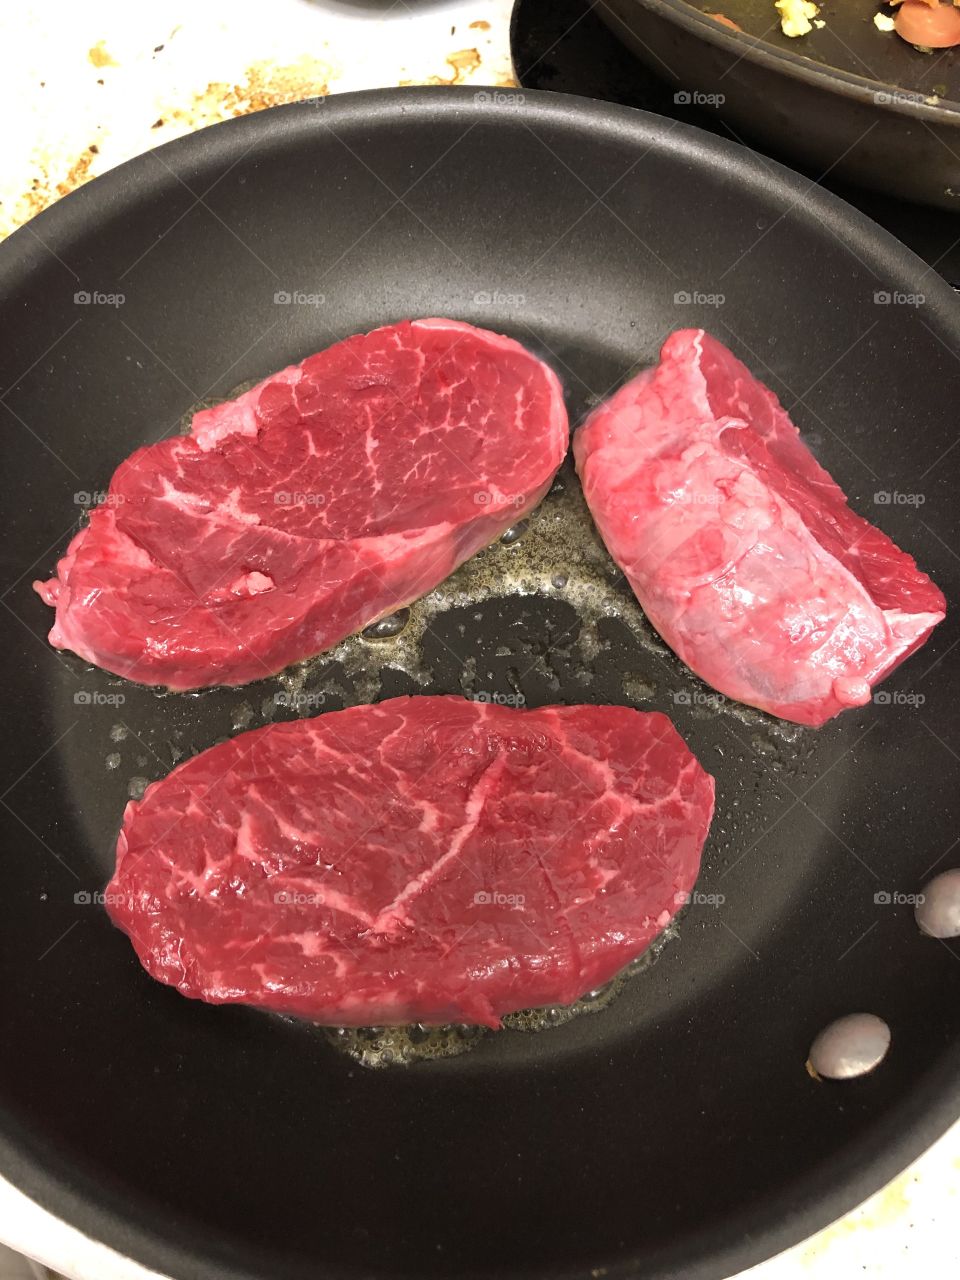 Steak n butter